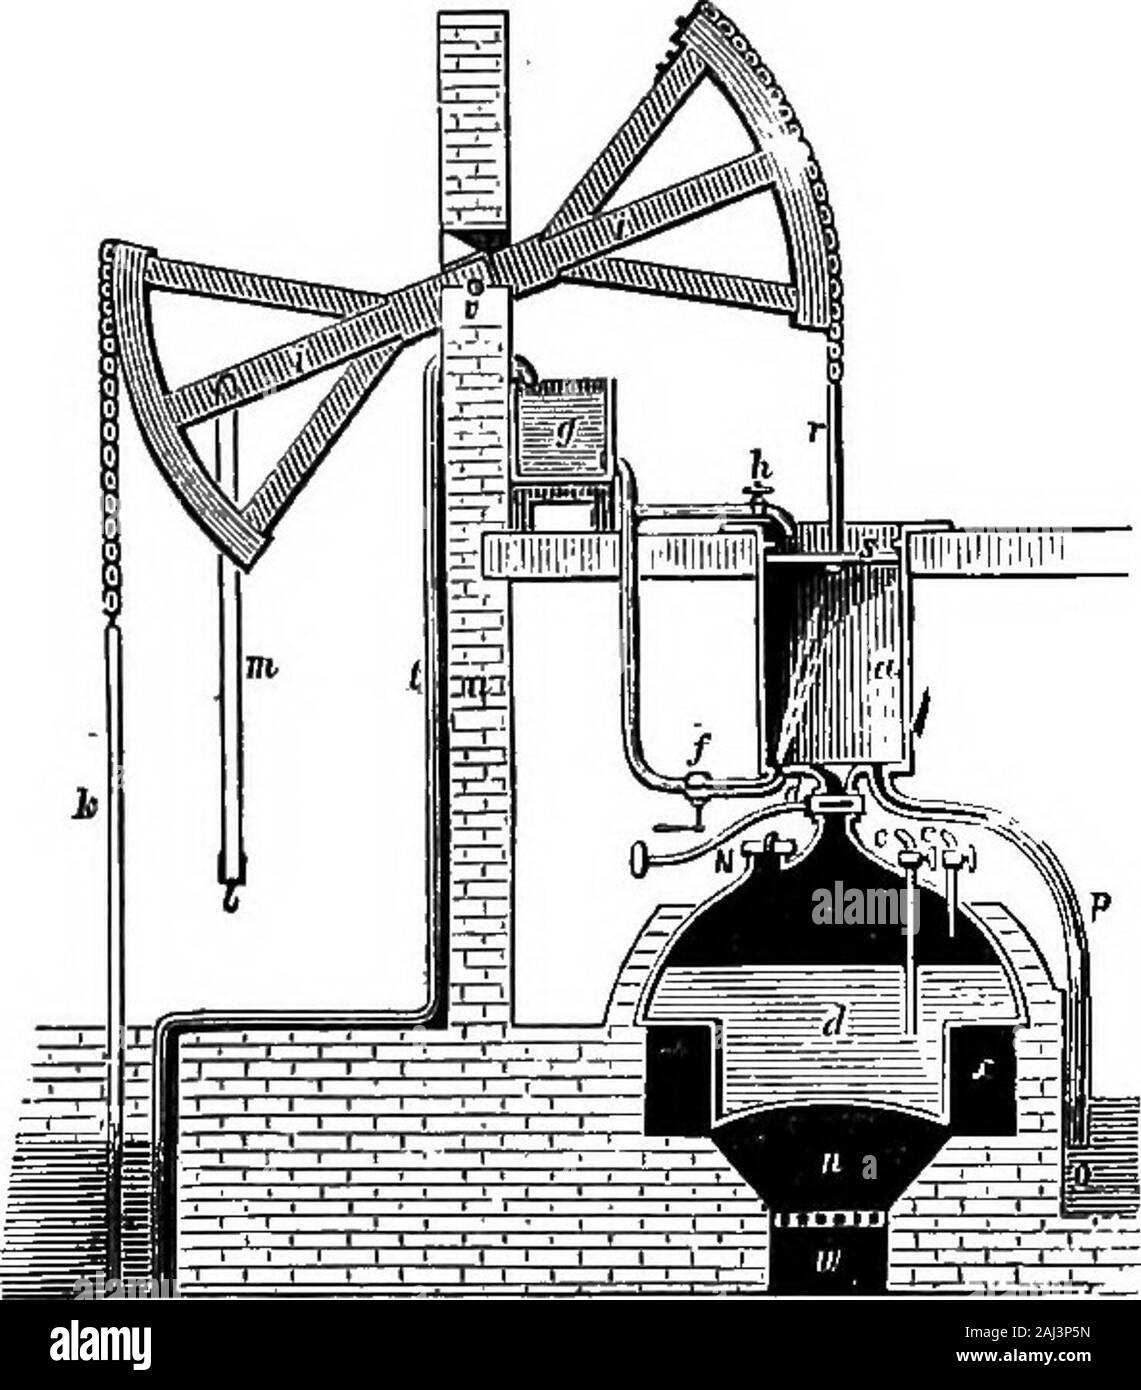 historia del crecimiento de la máquina de vapor . En densation. Un chorro de agua fue lanzada directamente en lostornillos, así efectuar para motor justwhat Desaguliers había hecho para